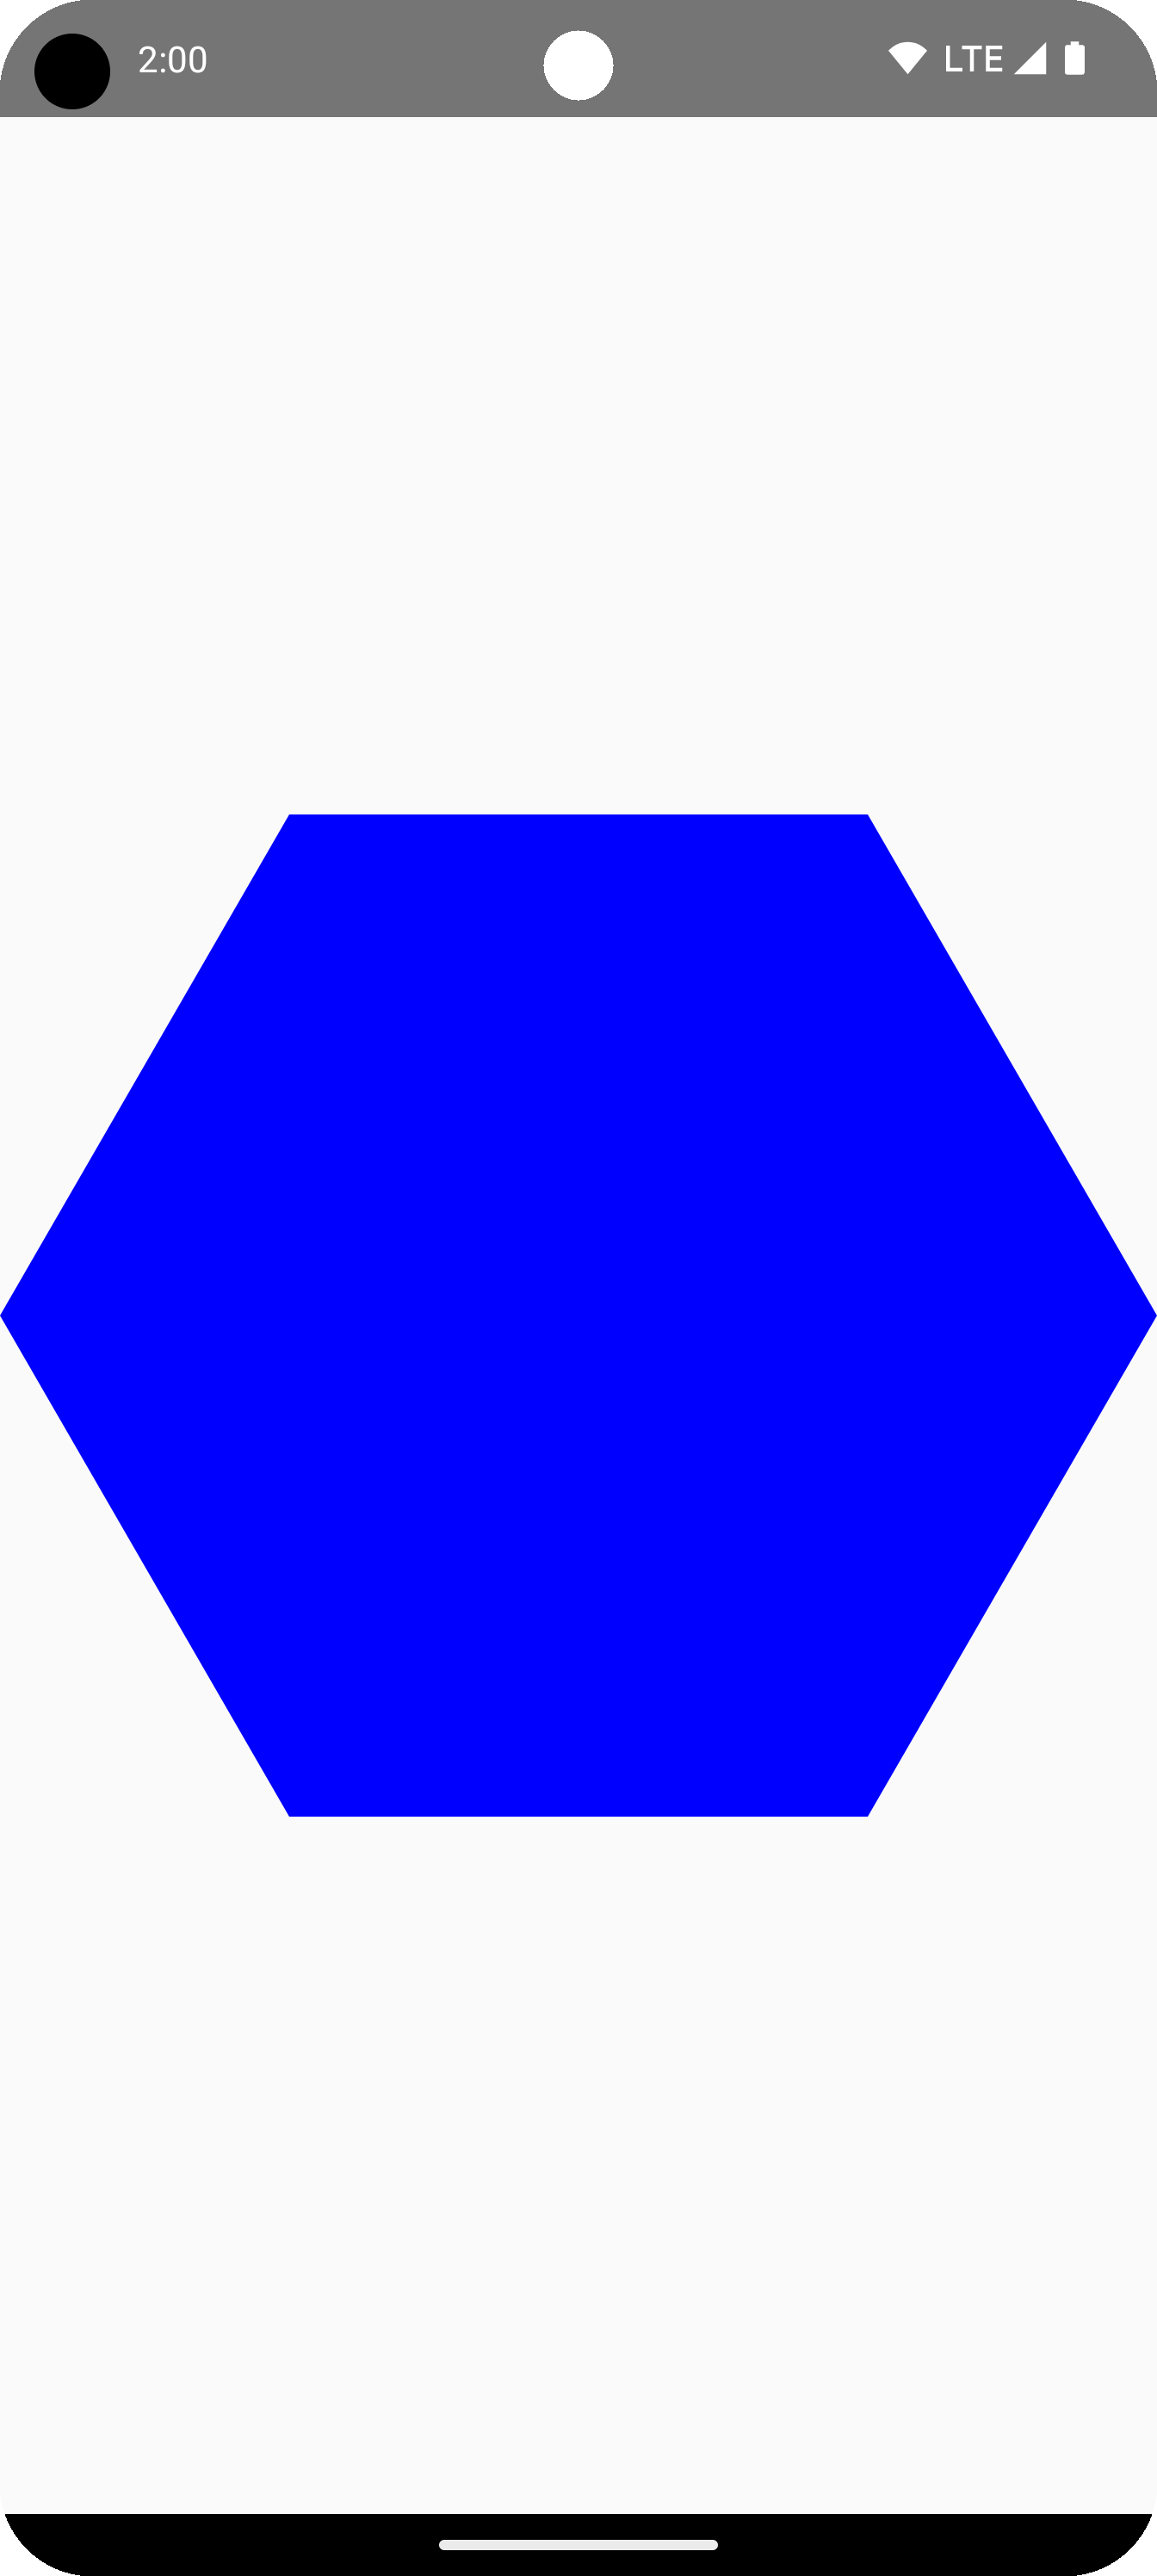 Синий шестиугольник в центре области рисования.